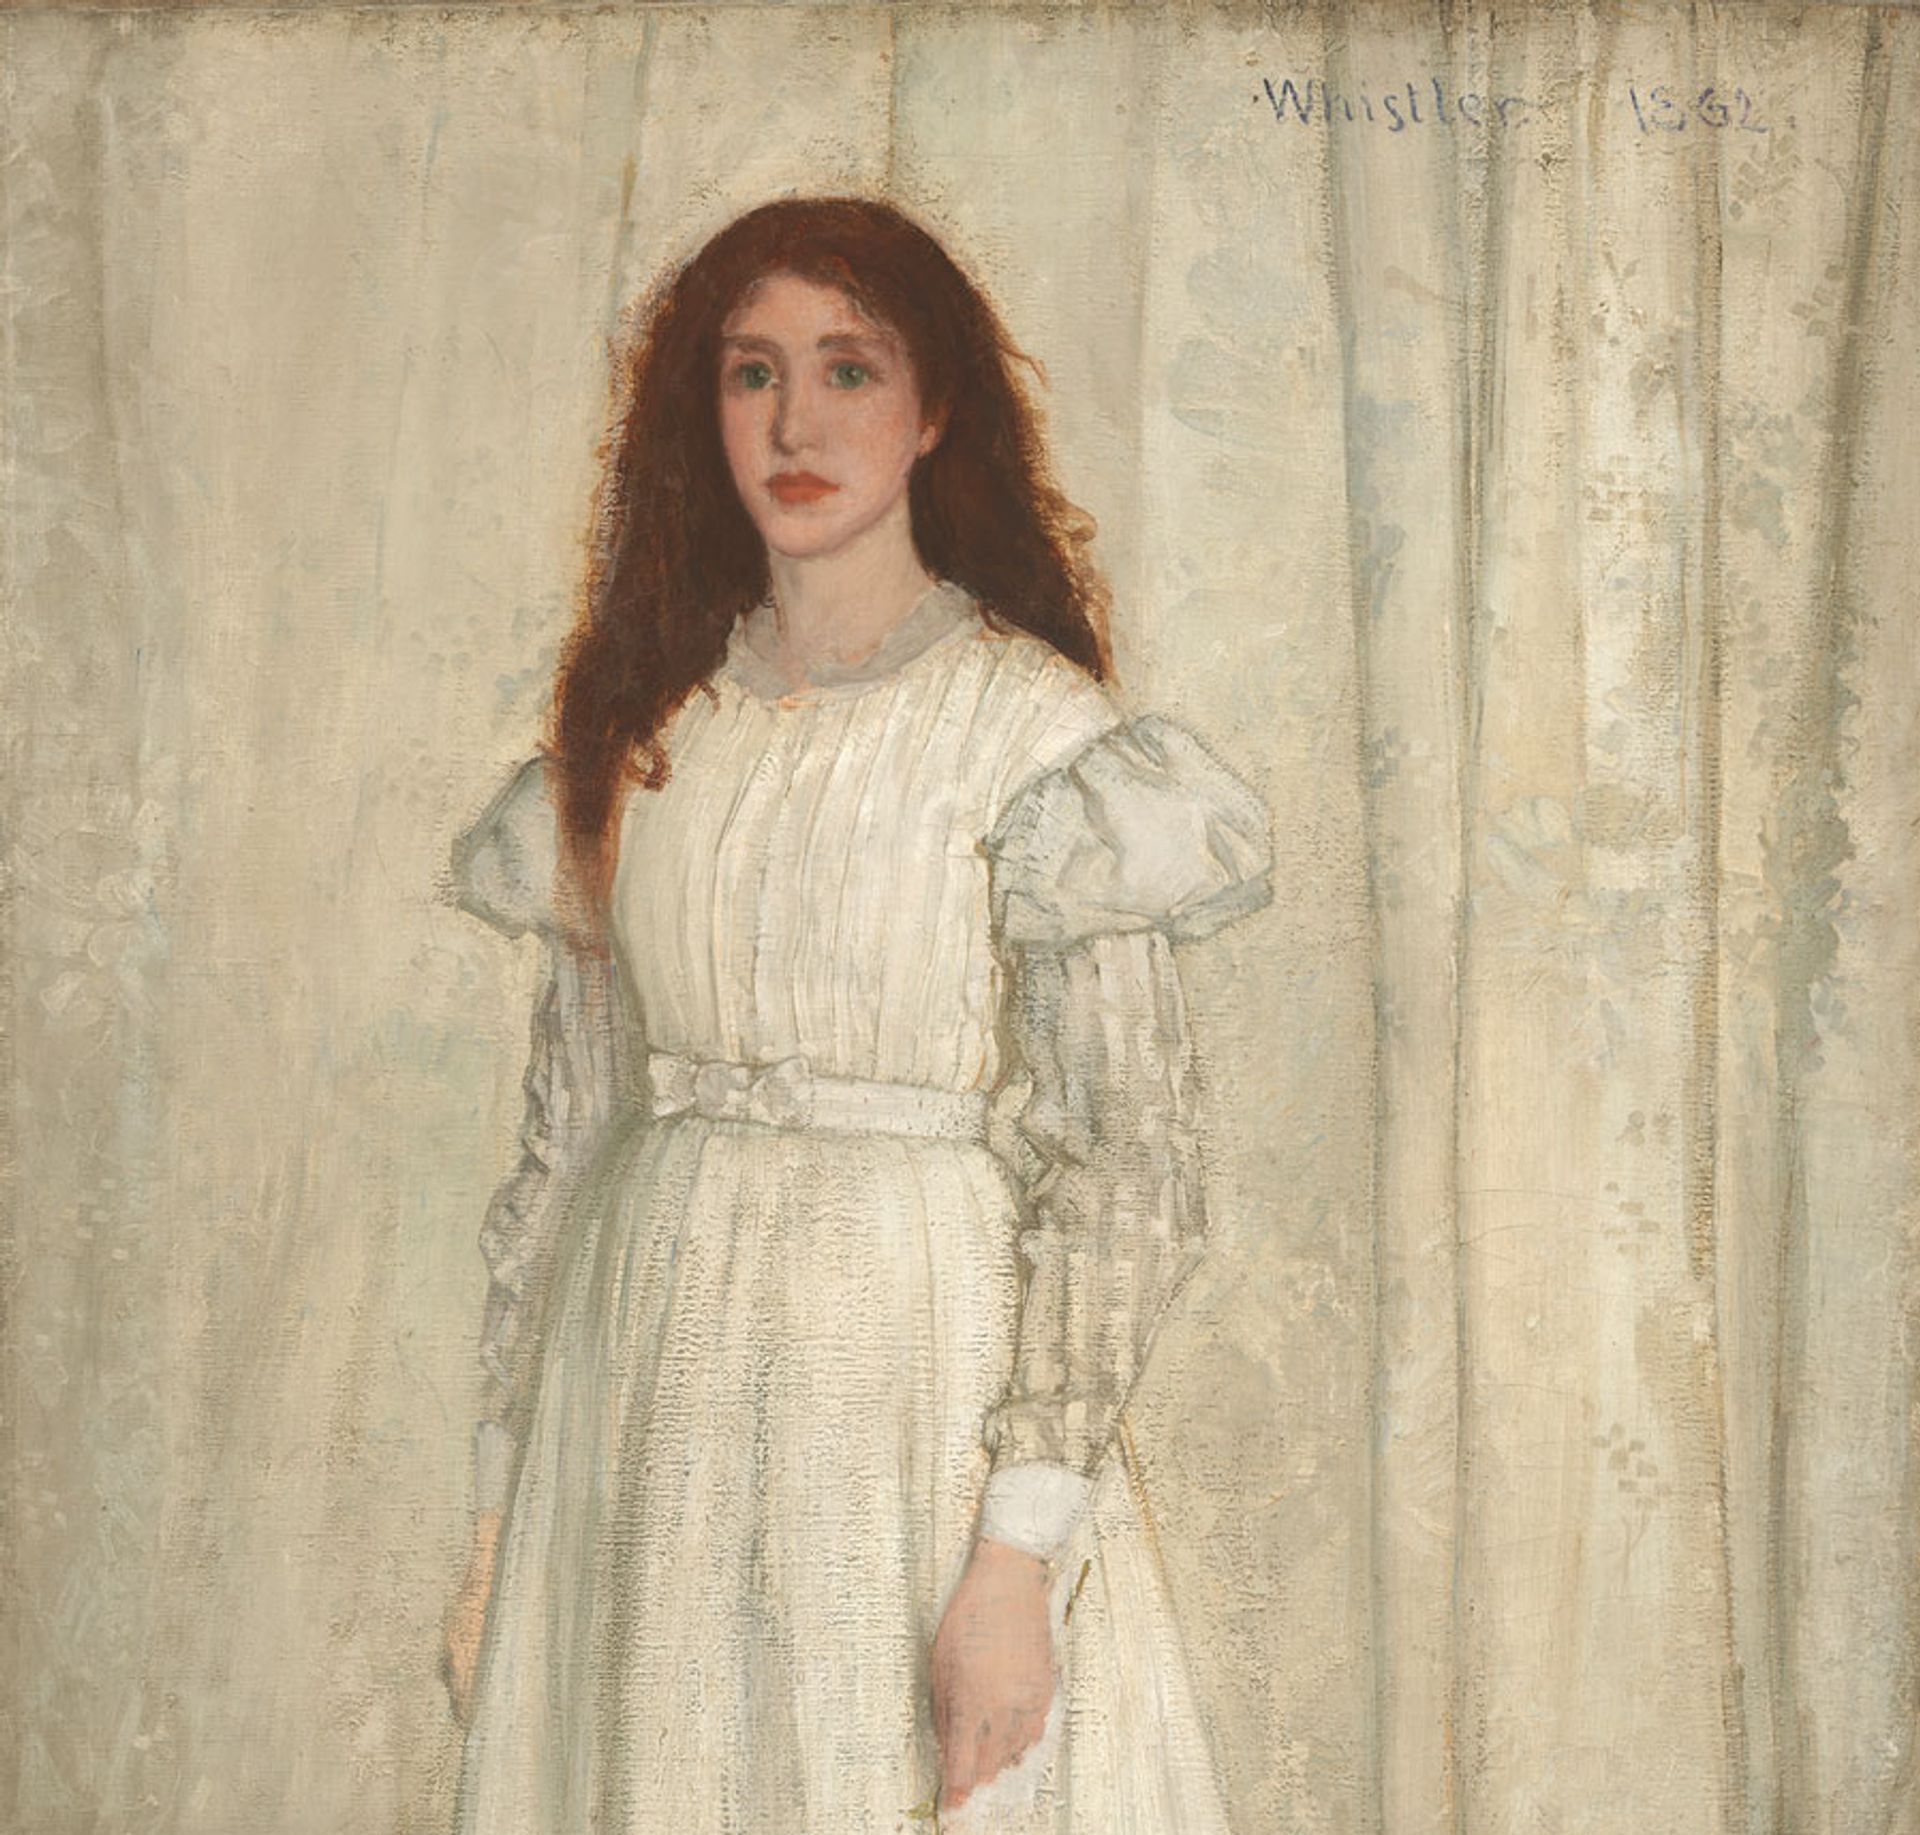 Symphony in White, No. 1: The White Girl (1862) של ג'יימס אבוט מקניל ויסלר 

הגלריה הלאומית לאמנות, וושינגטון, אוסף האריס ויטמור